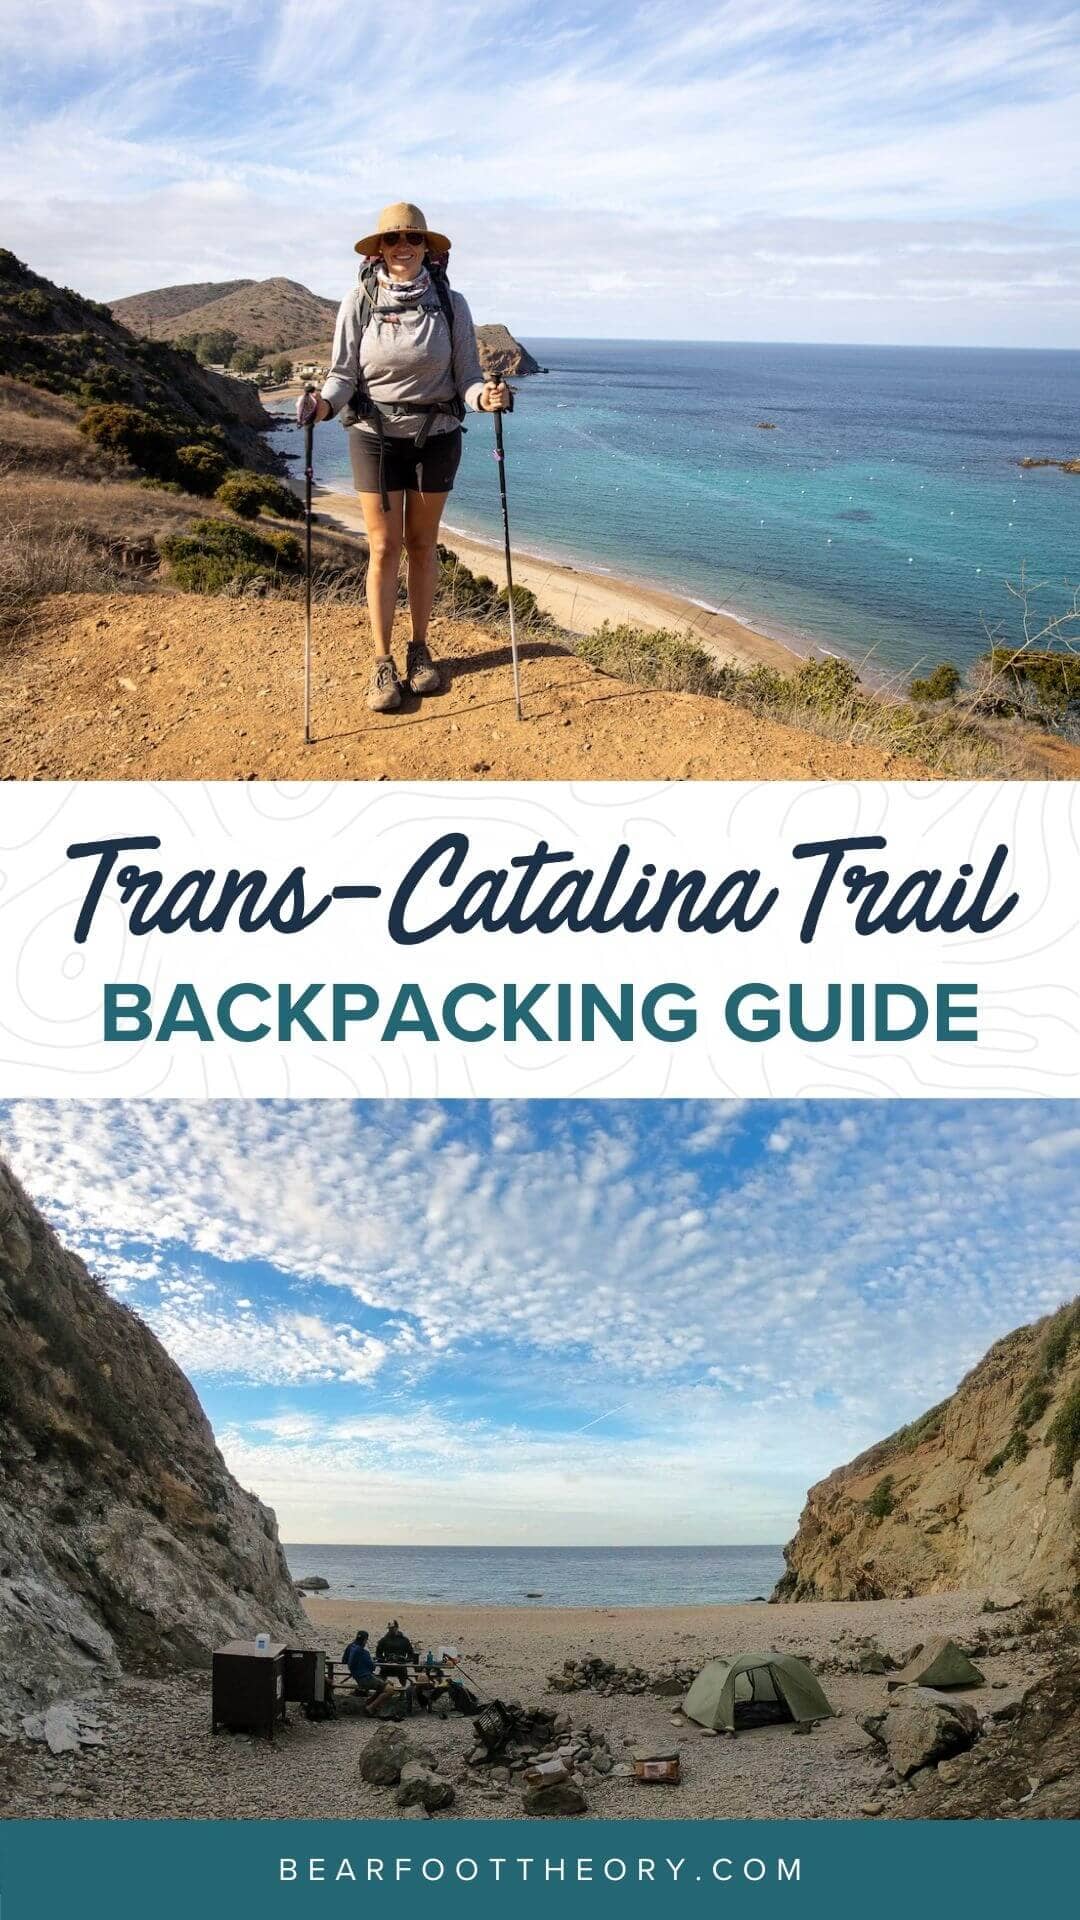 在加州的跨卡塔利纳小径上计划一次背包旅行，这篇远足指南包括关于最佳露营地、装备和水的建议。